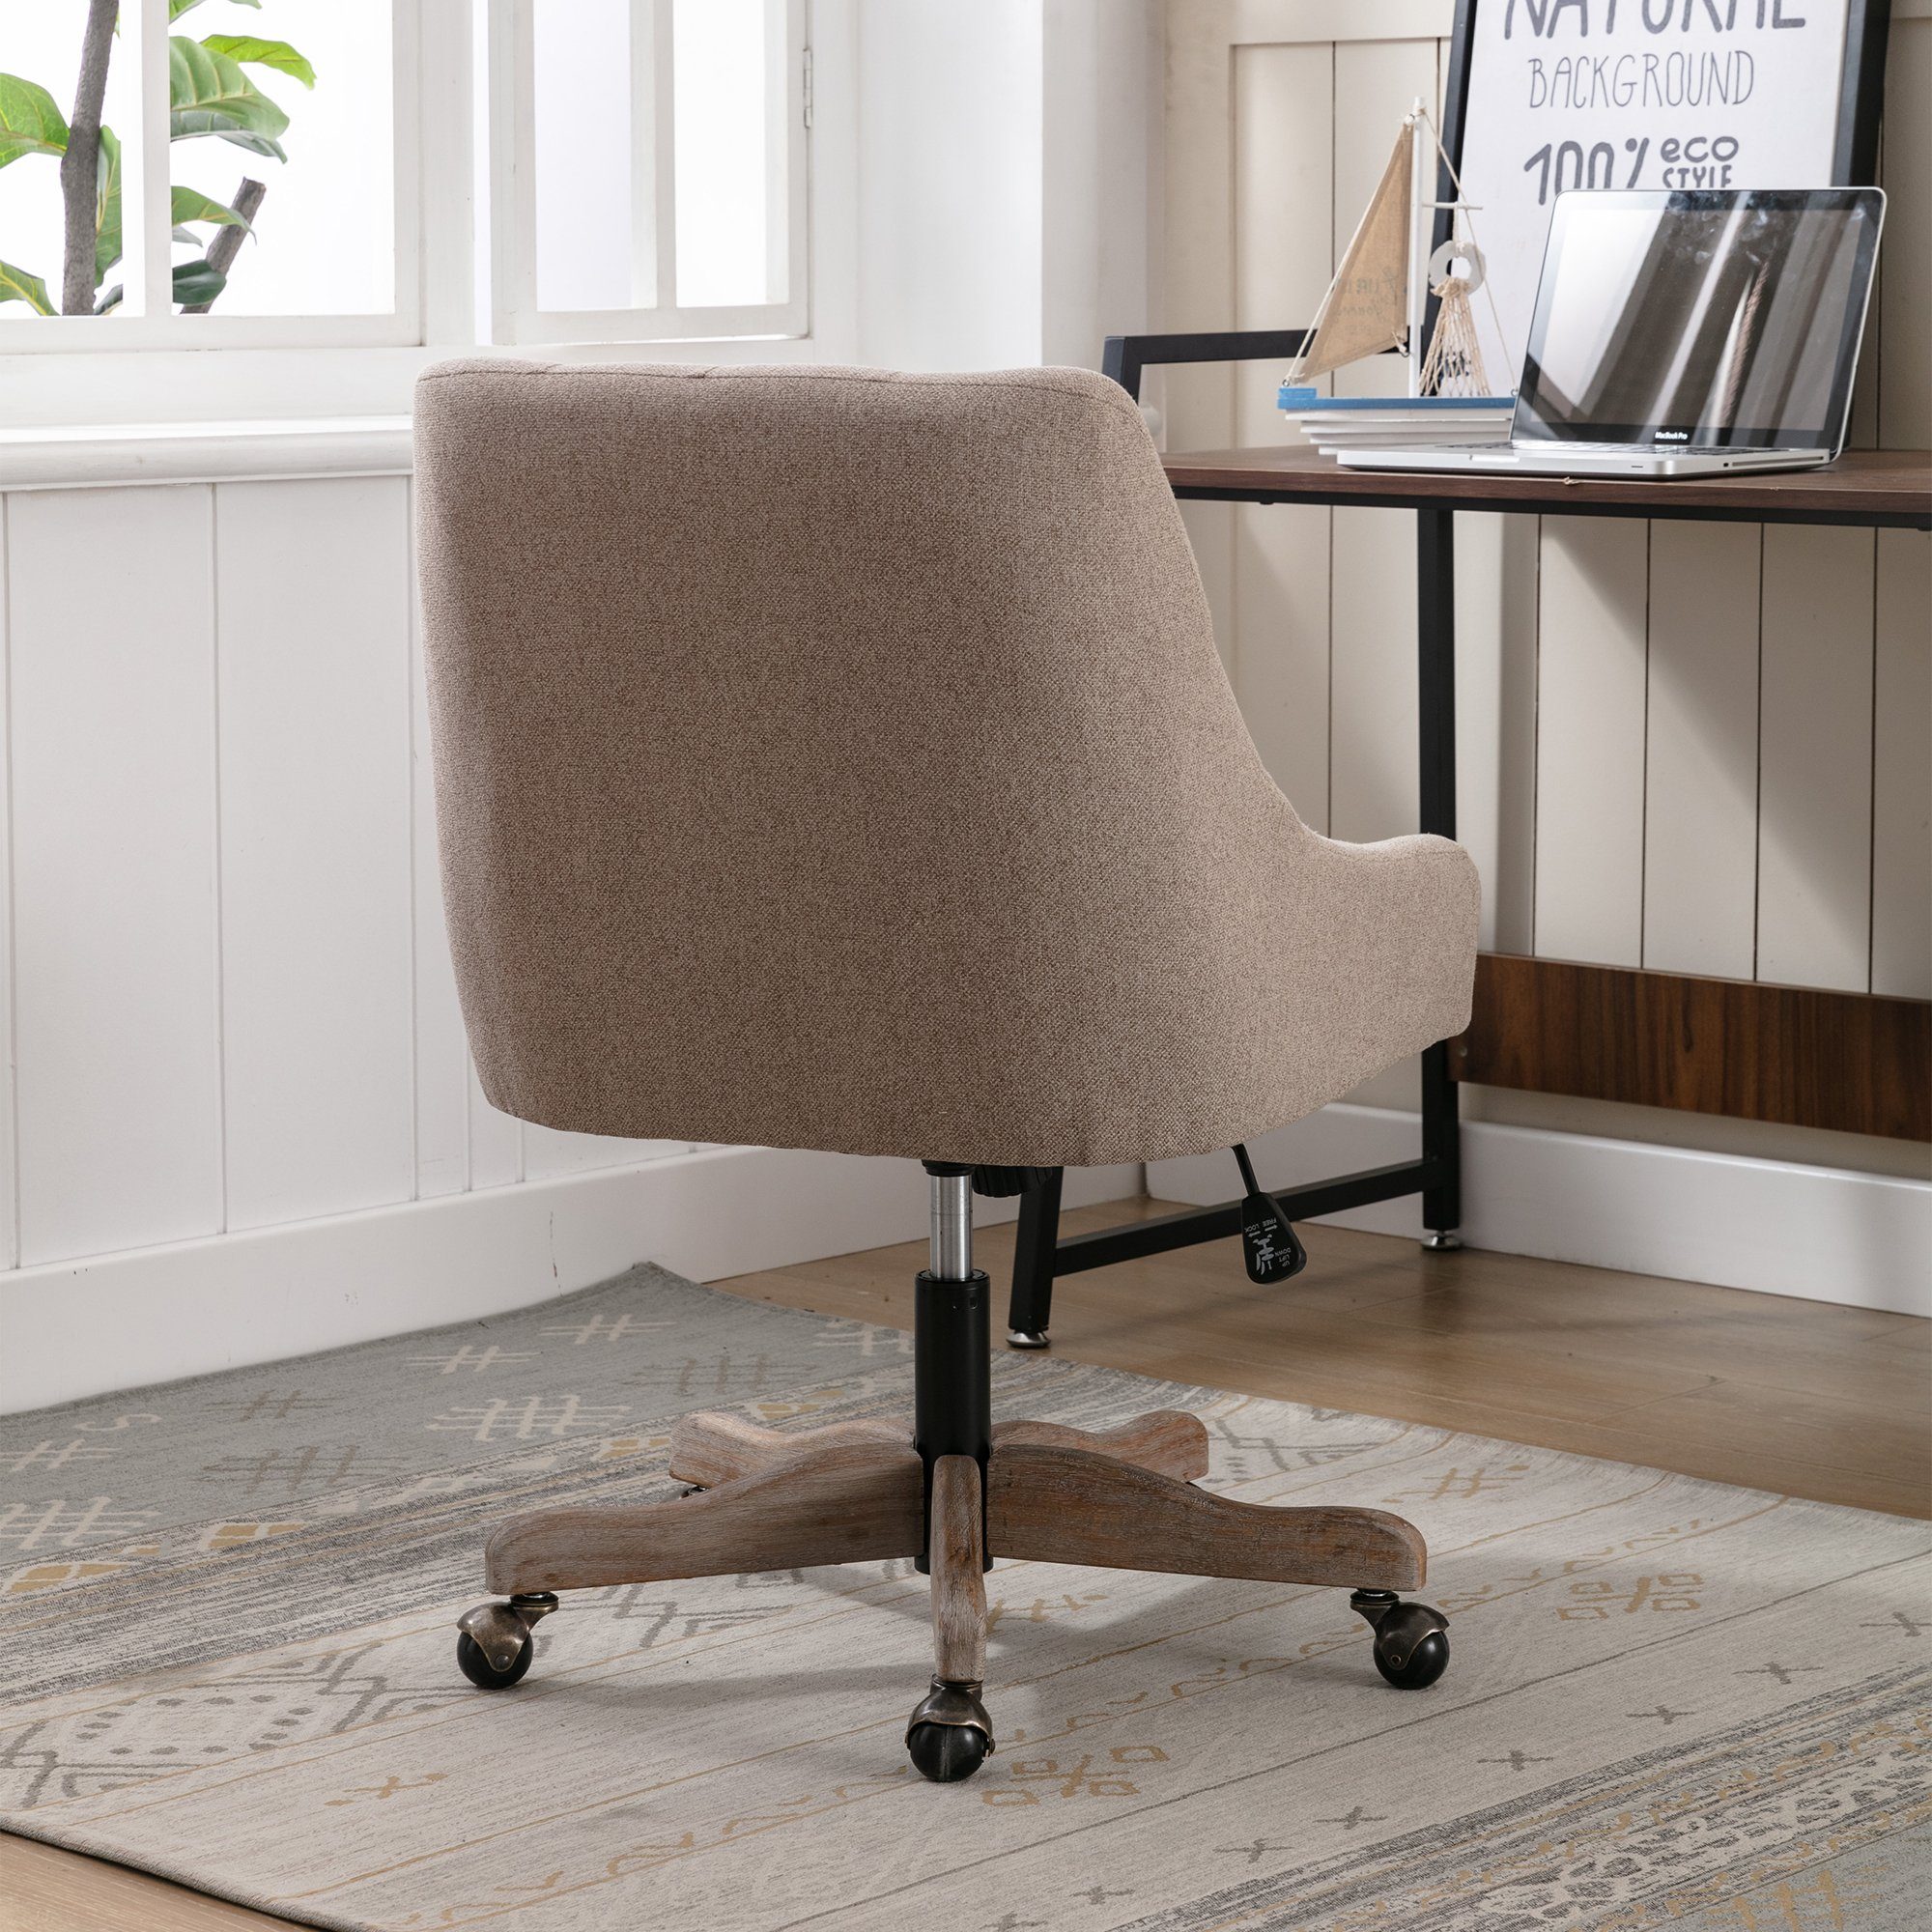 Bürostuhl mit Drehstuhl Rollen & Rückenlehne Ulife Schreibtischstuhl höhenverstellbar, Beige